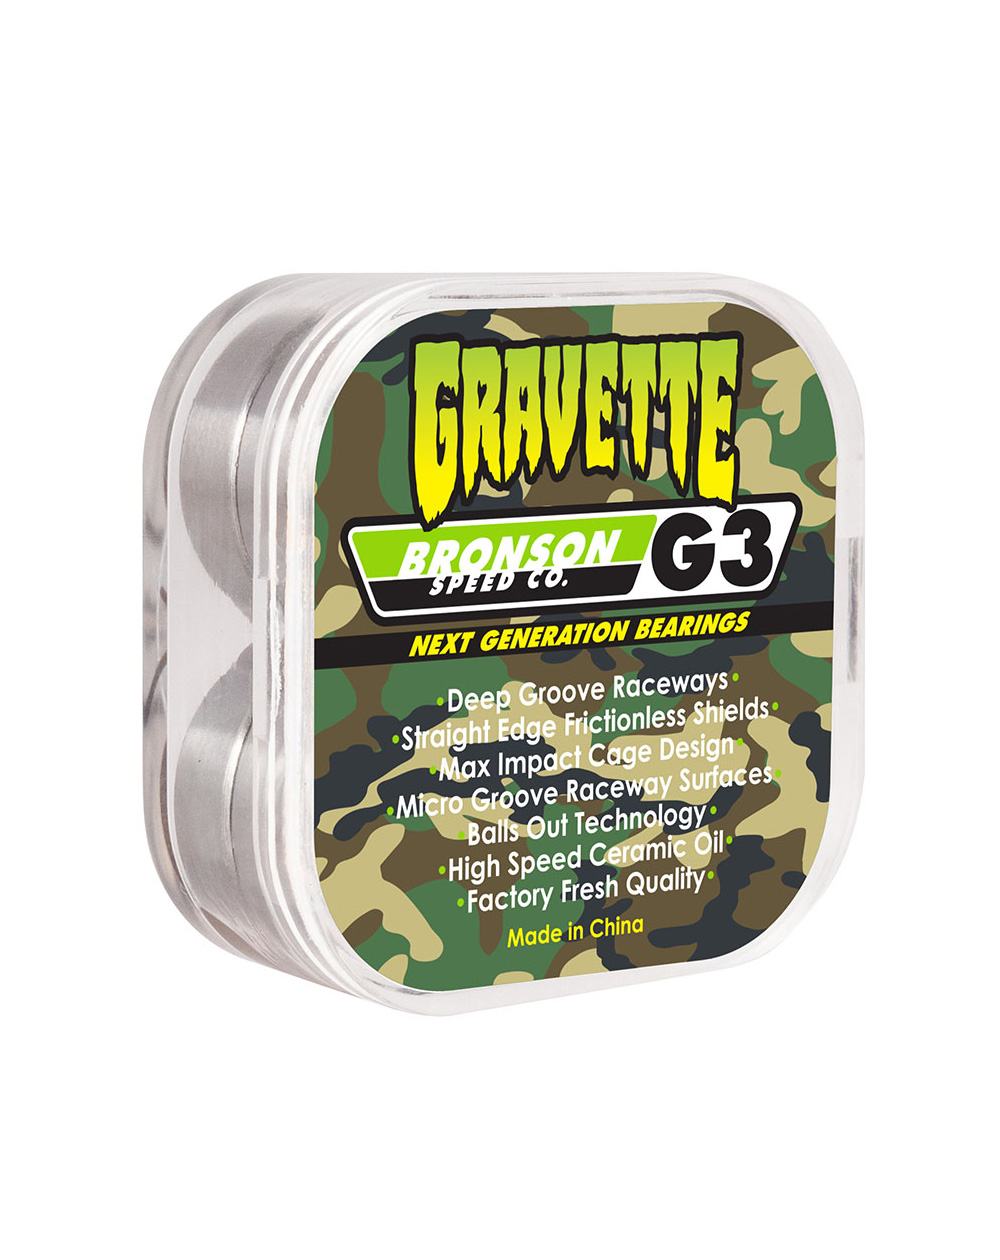 Bronson Speed Co. G3 Pro David Gravette Skateboard Bearings